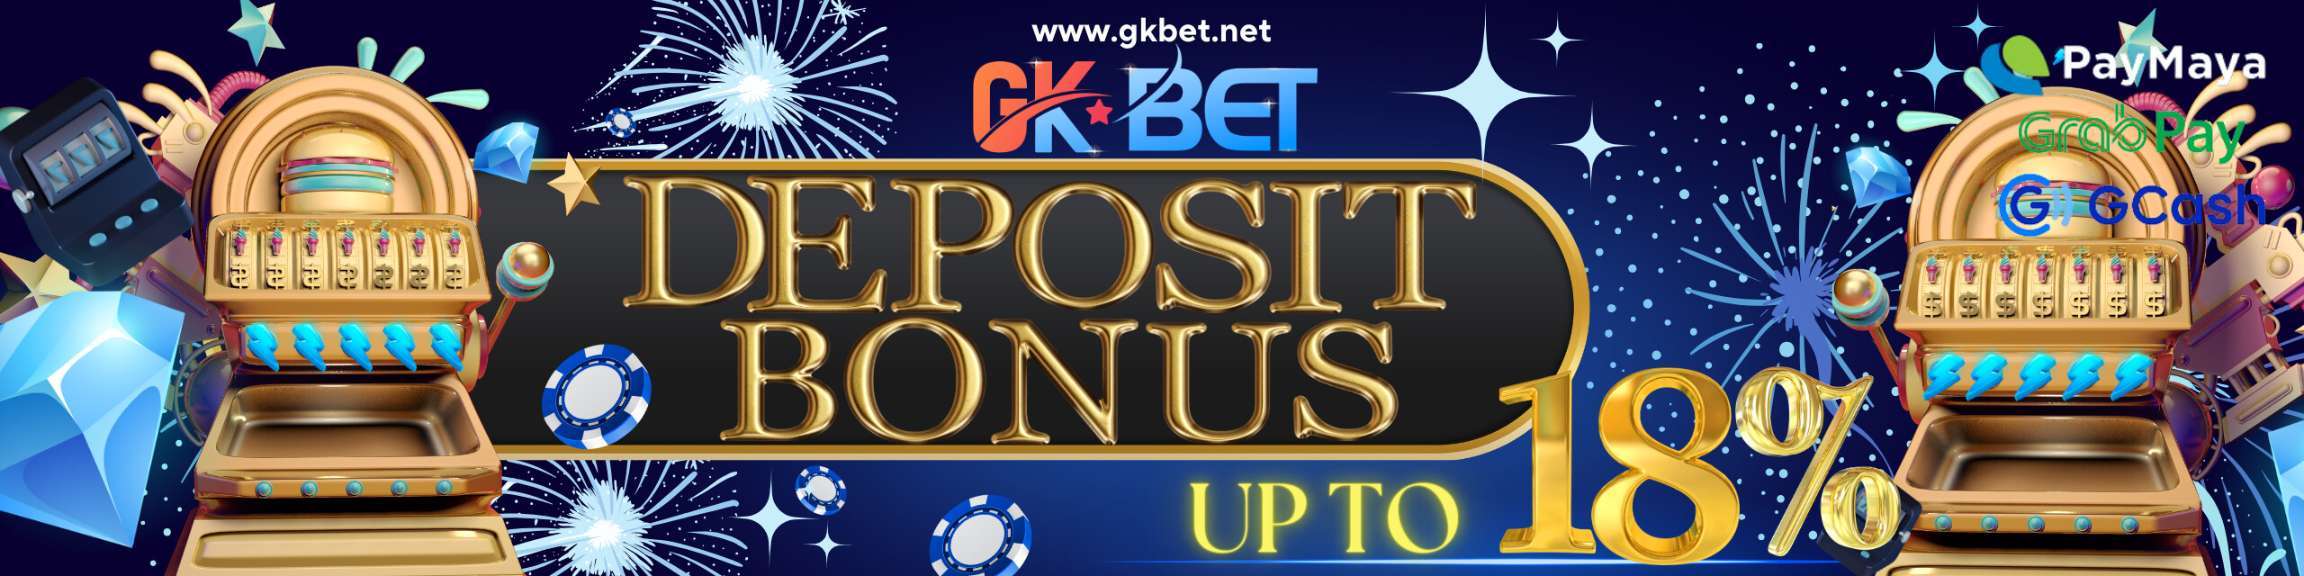 GKBET - Deposit Bonus